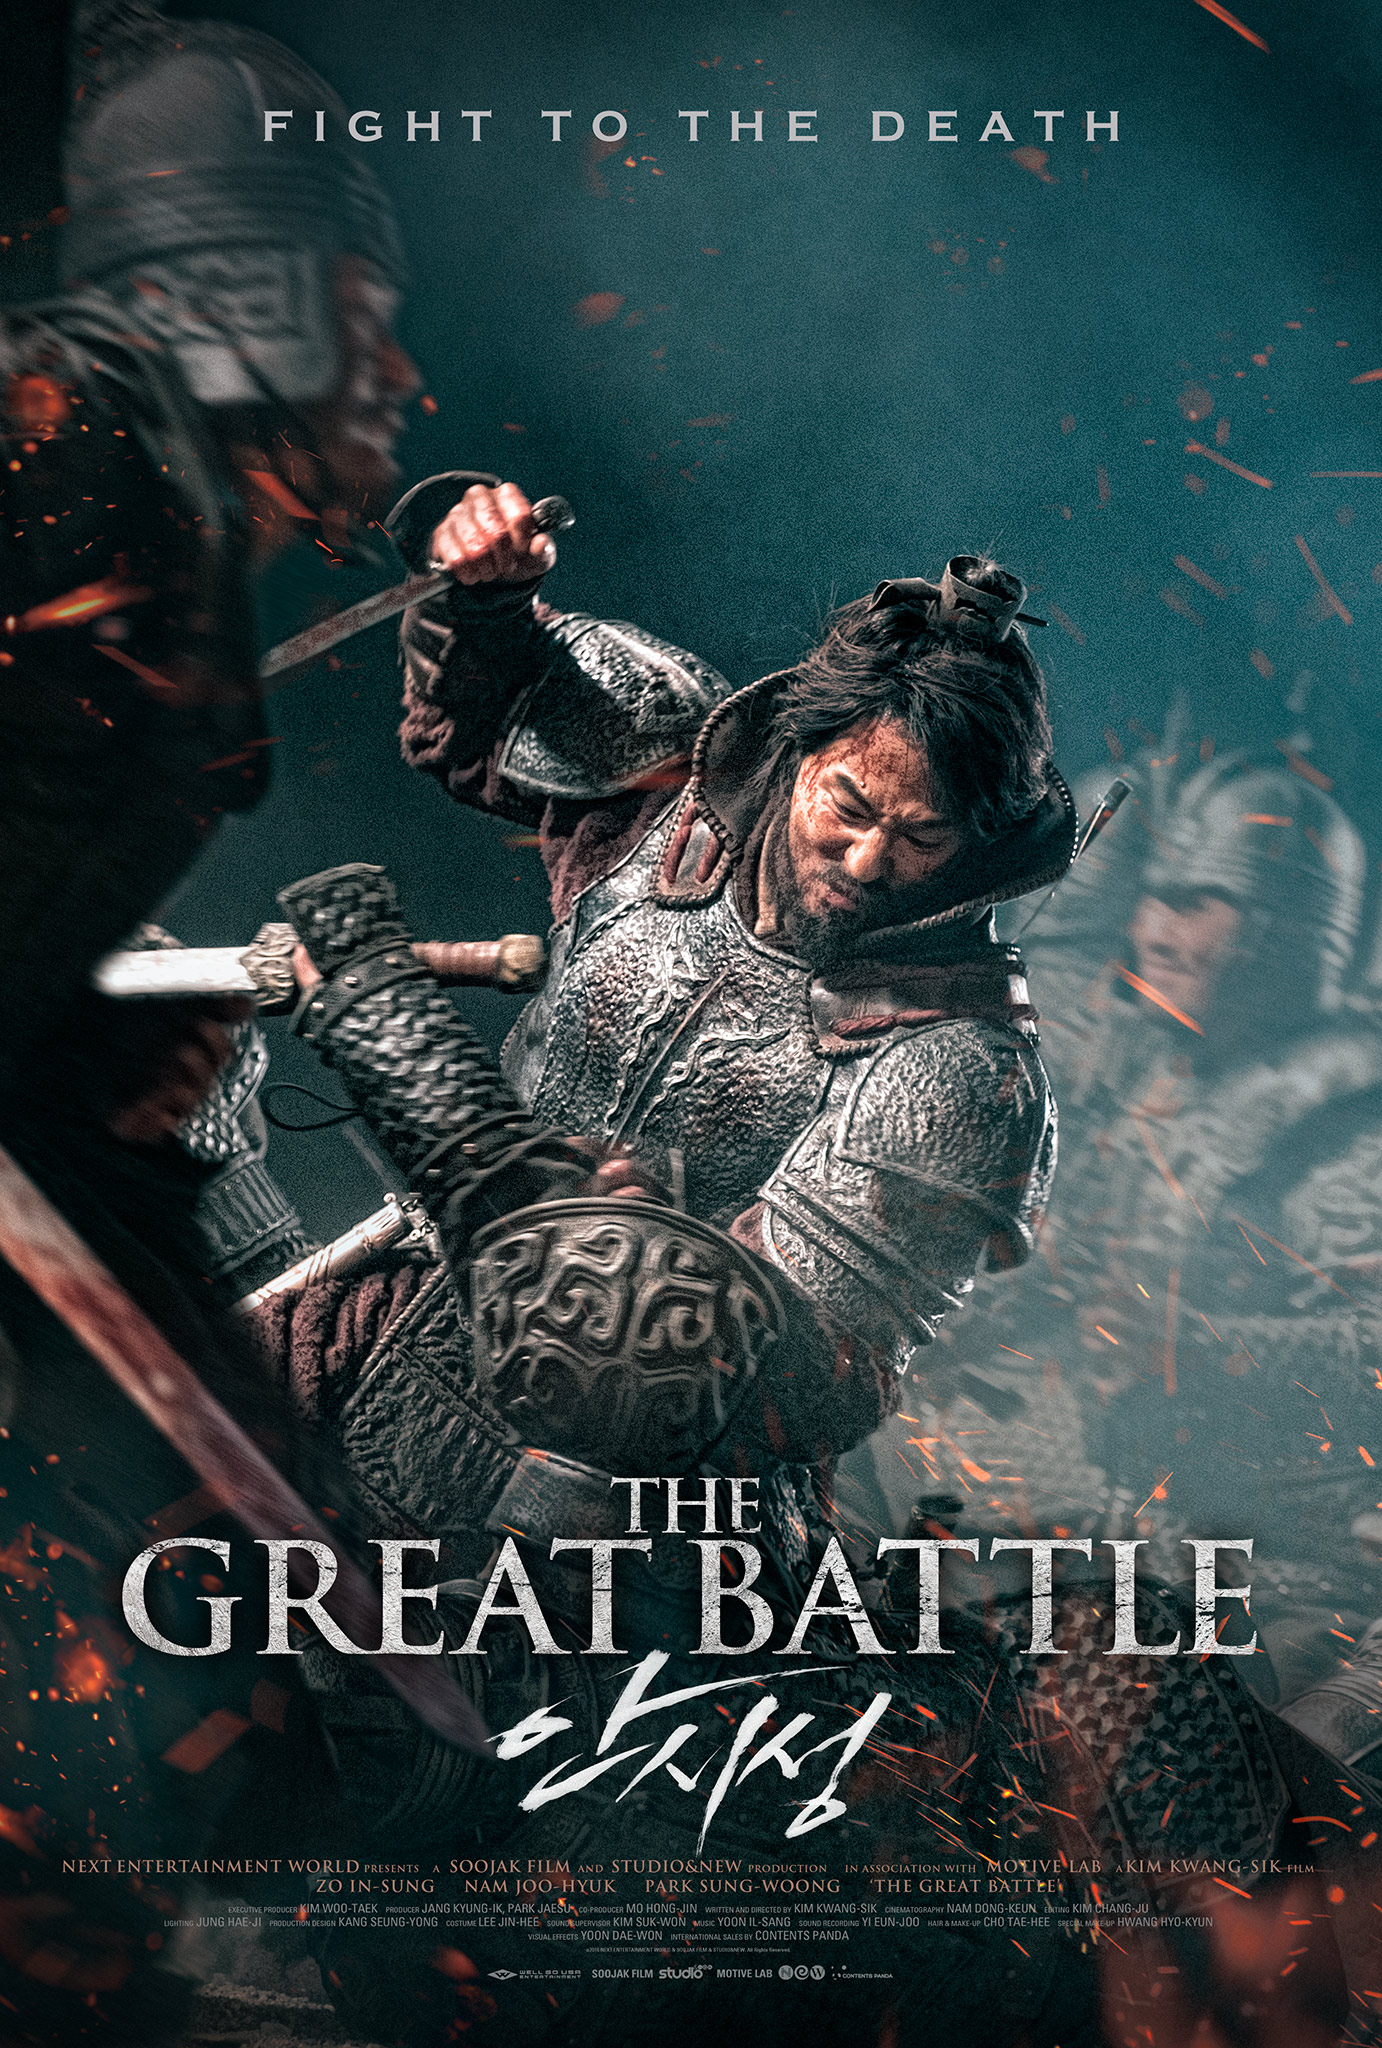 دانلود فیلم سینمایی The Great Battle 2018 با زیرنویس فارسی اکشن تاریخی درام فیلم سینمایی مالتی مدیا 